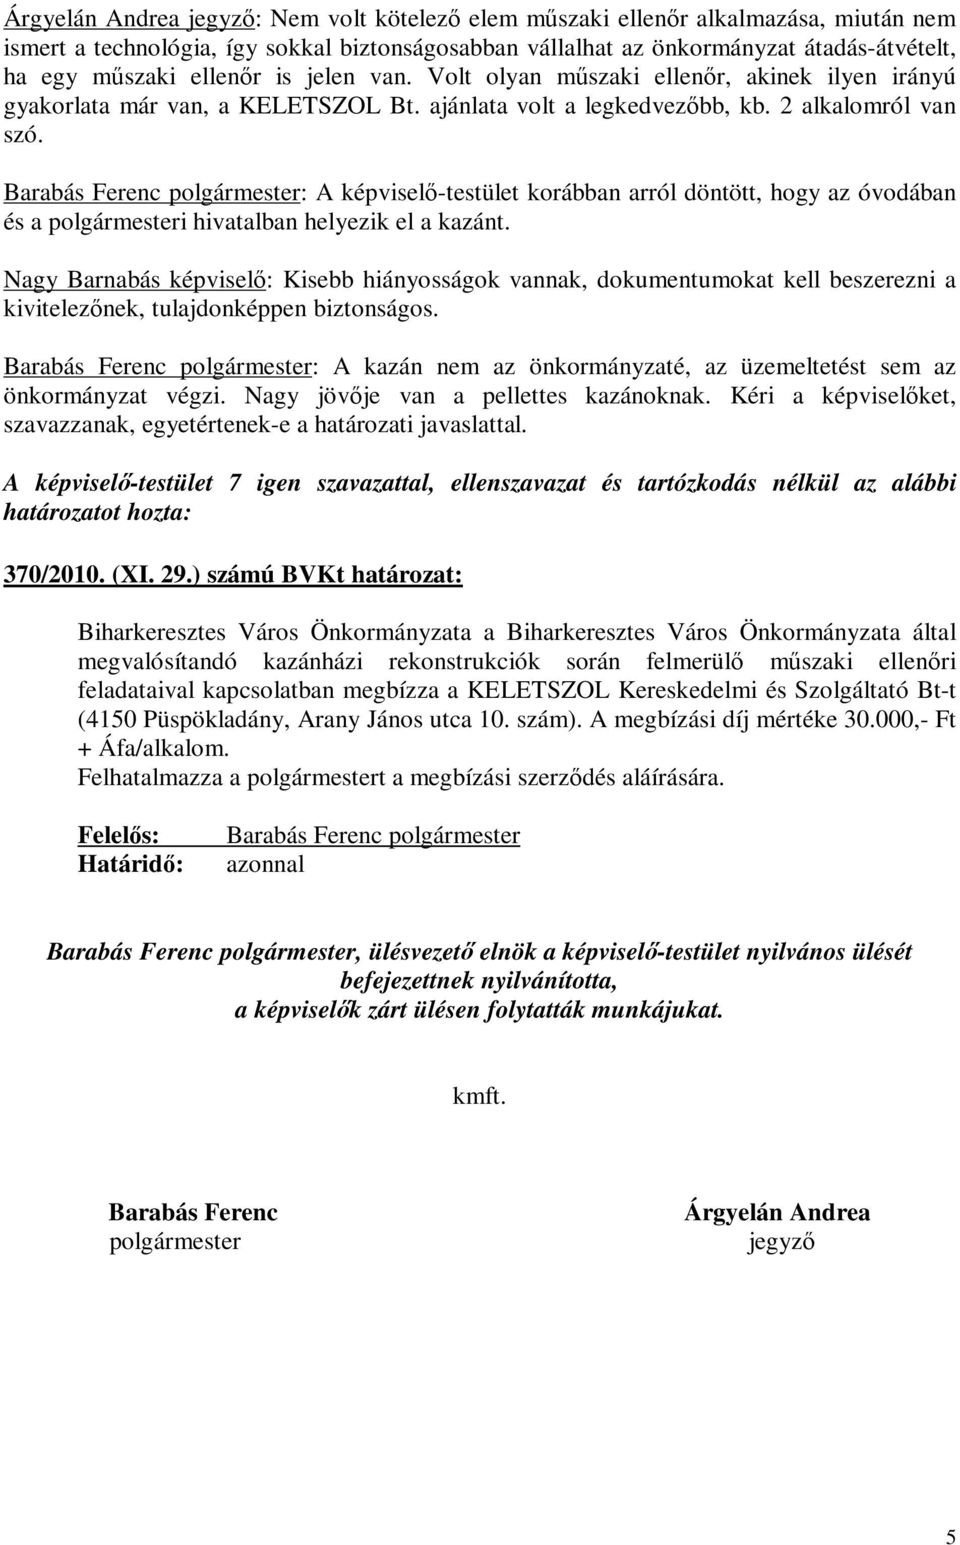 Barabás Ferenc polgármester: A képviselő-testület korábban arról döntött, hogy az óvodában és a polgármesteri hivatalban helyezik el a kazánt.